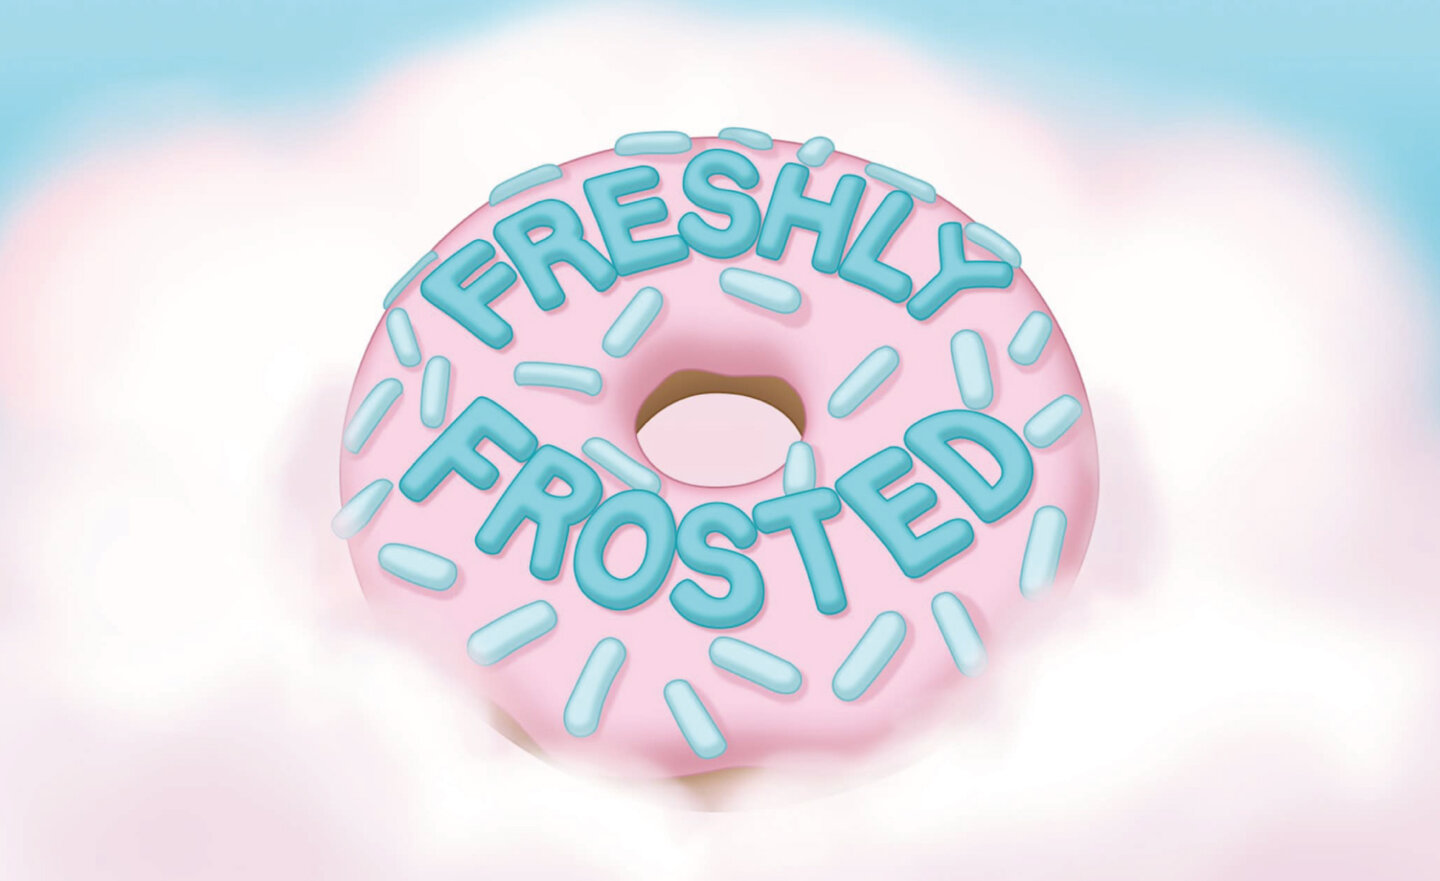 【限時免費】甜甜圈解謎遊戲《Freshly Frosted》和《Rumble Club》 遊戲獎金放送中，2024 年 6 月 27 日深夜 23:00 截止